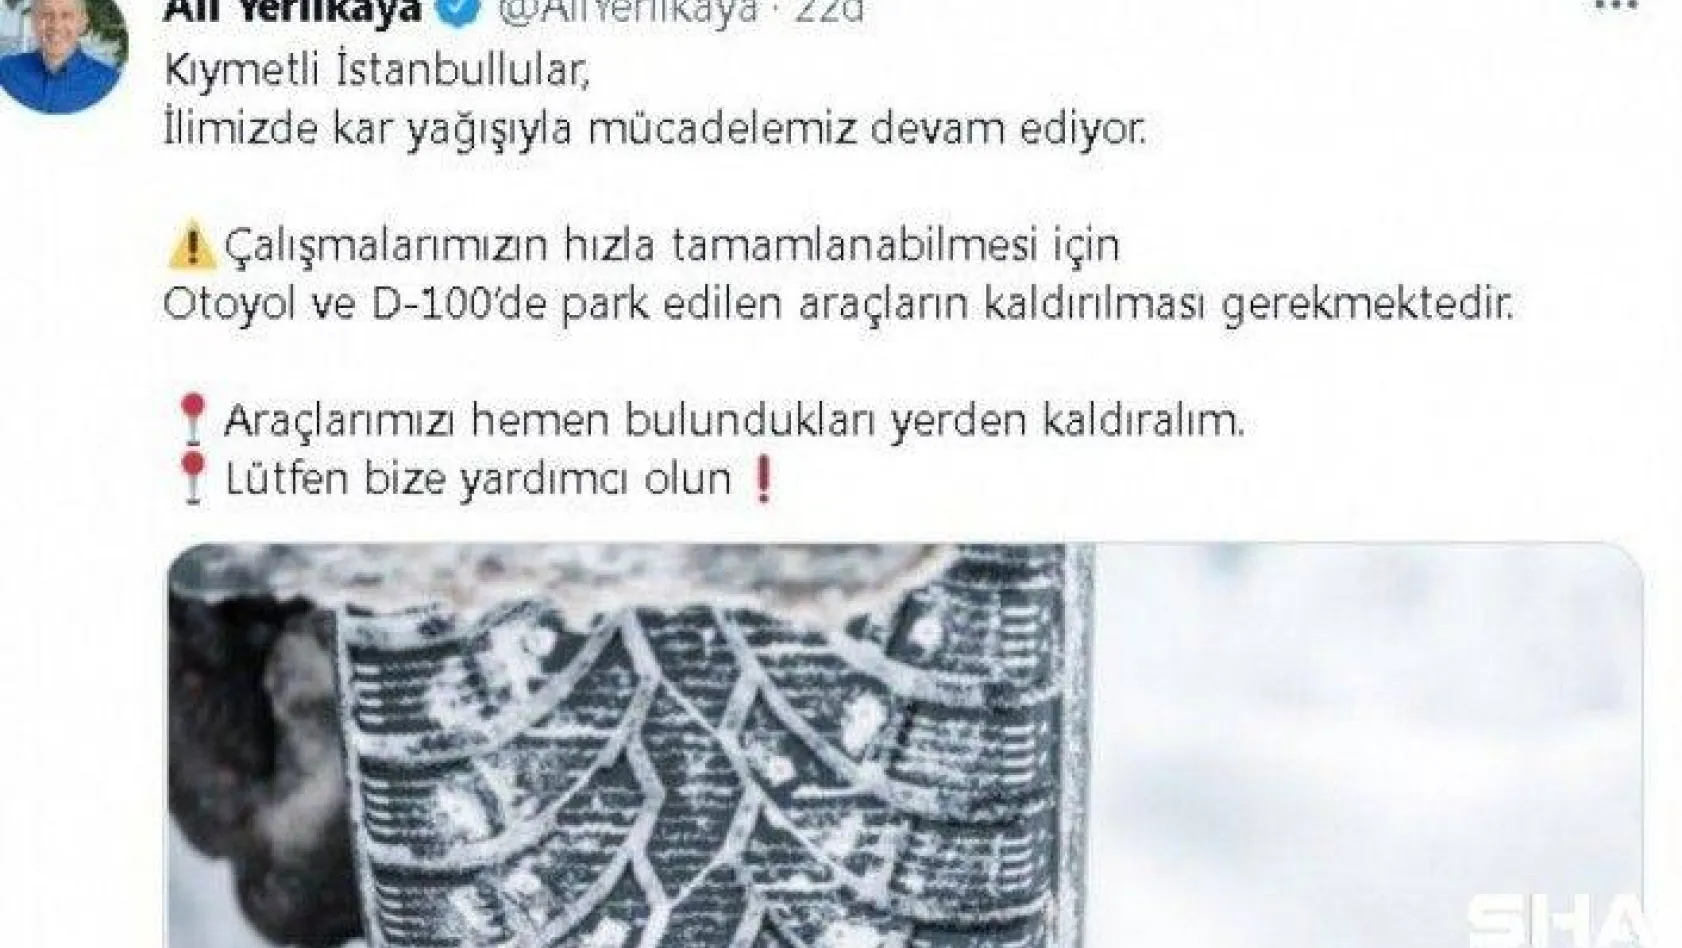 İstanbul Valisi Ali Yerlikaya sosyal medya hesabından araçların kaldırılması çağrısında bulundu